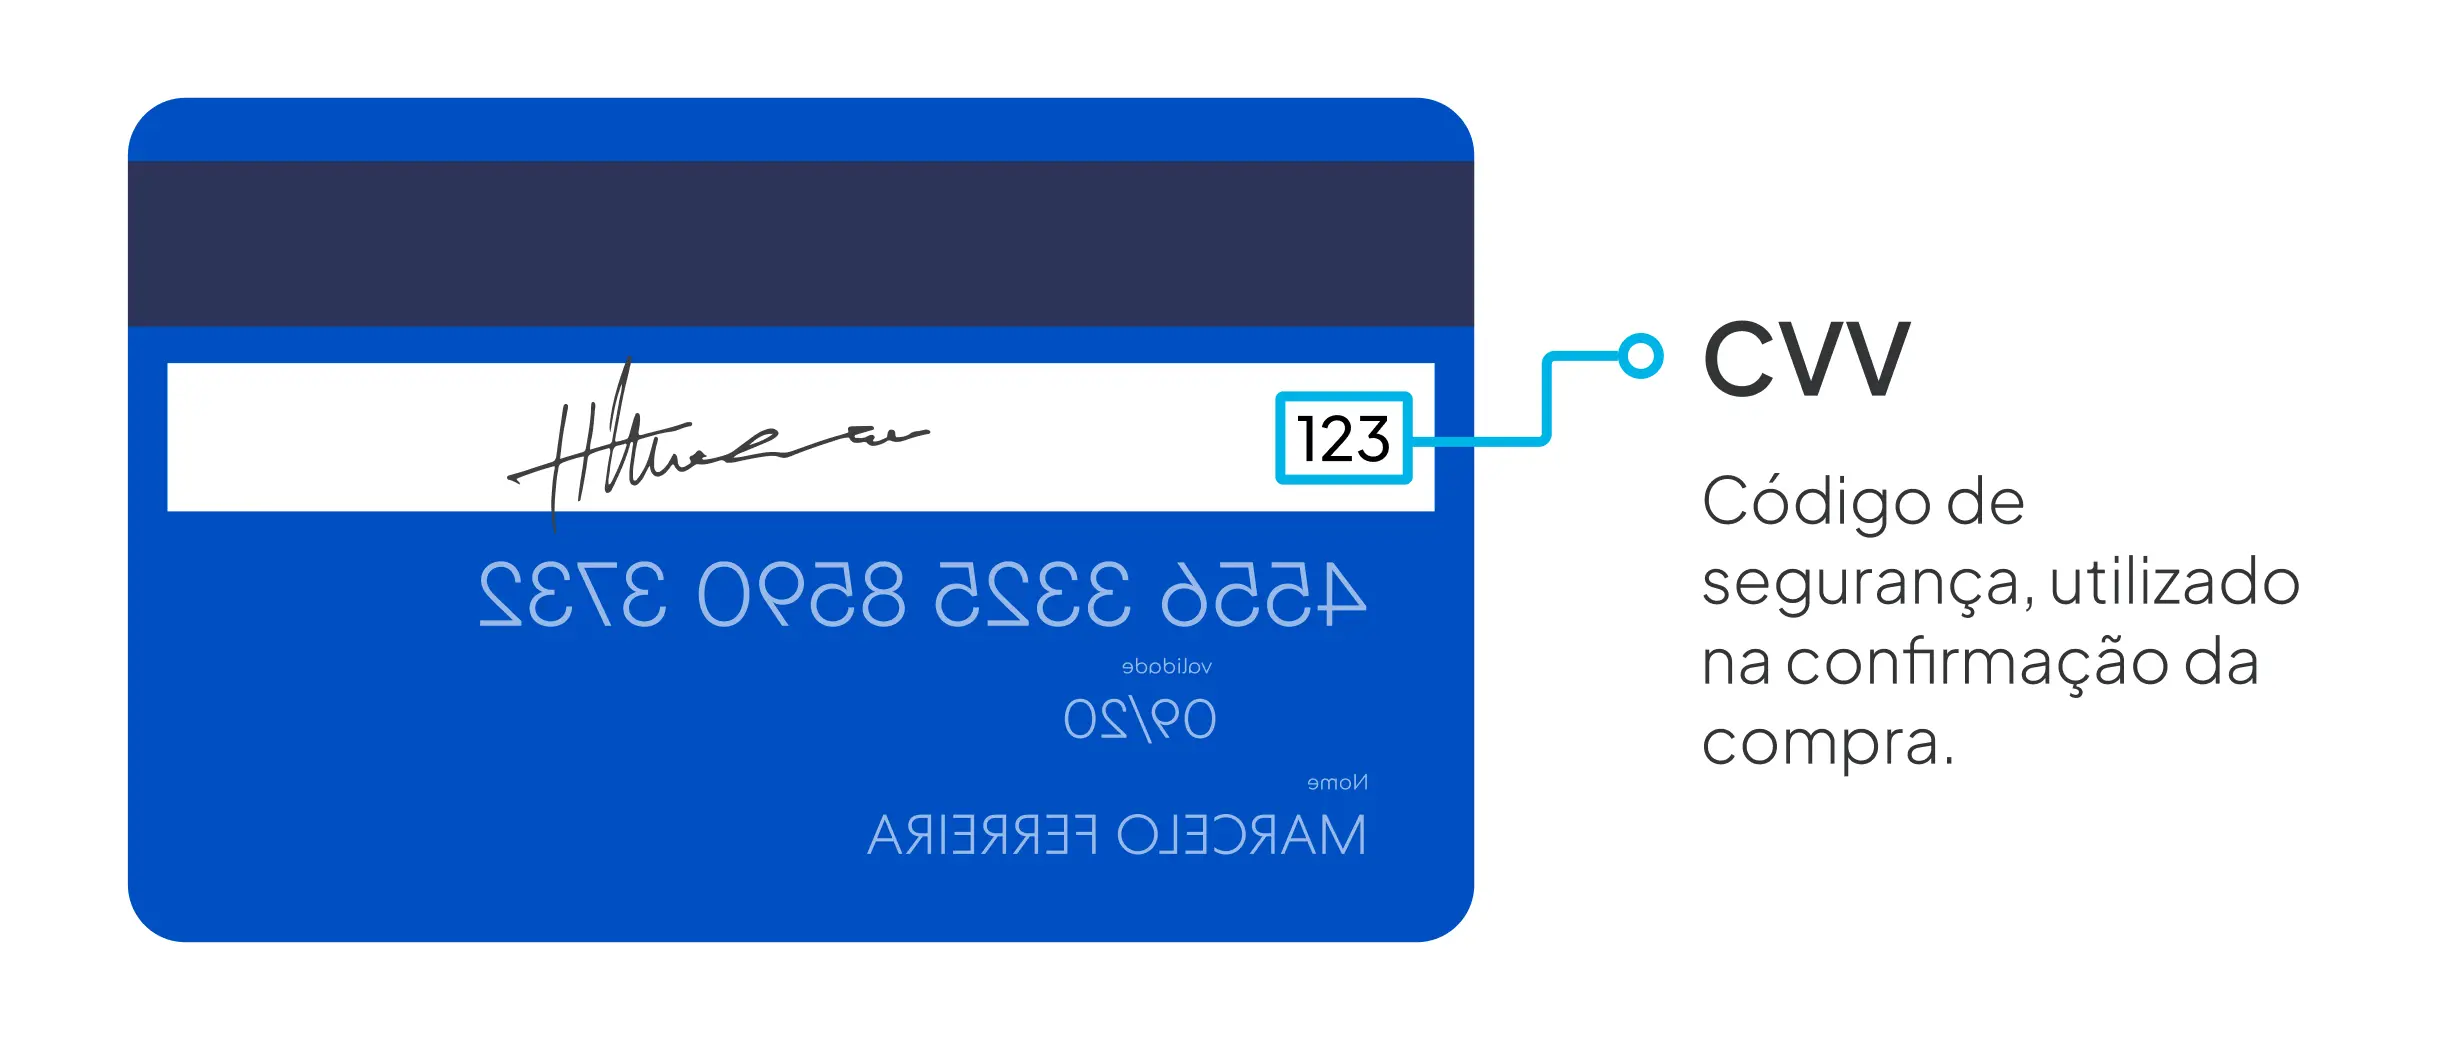 O Que Significa Cvv E Onde Fica No Cartão De Crédito 0281